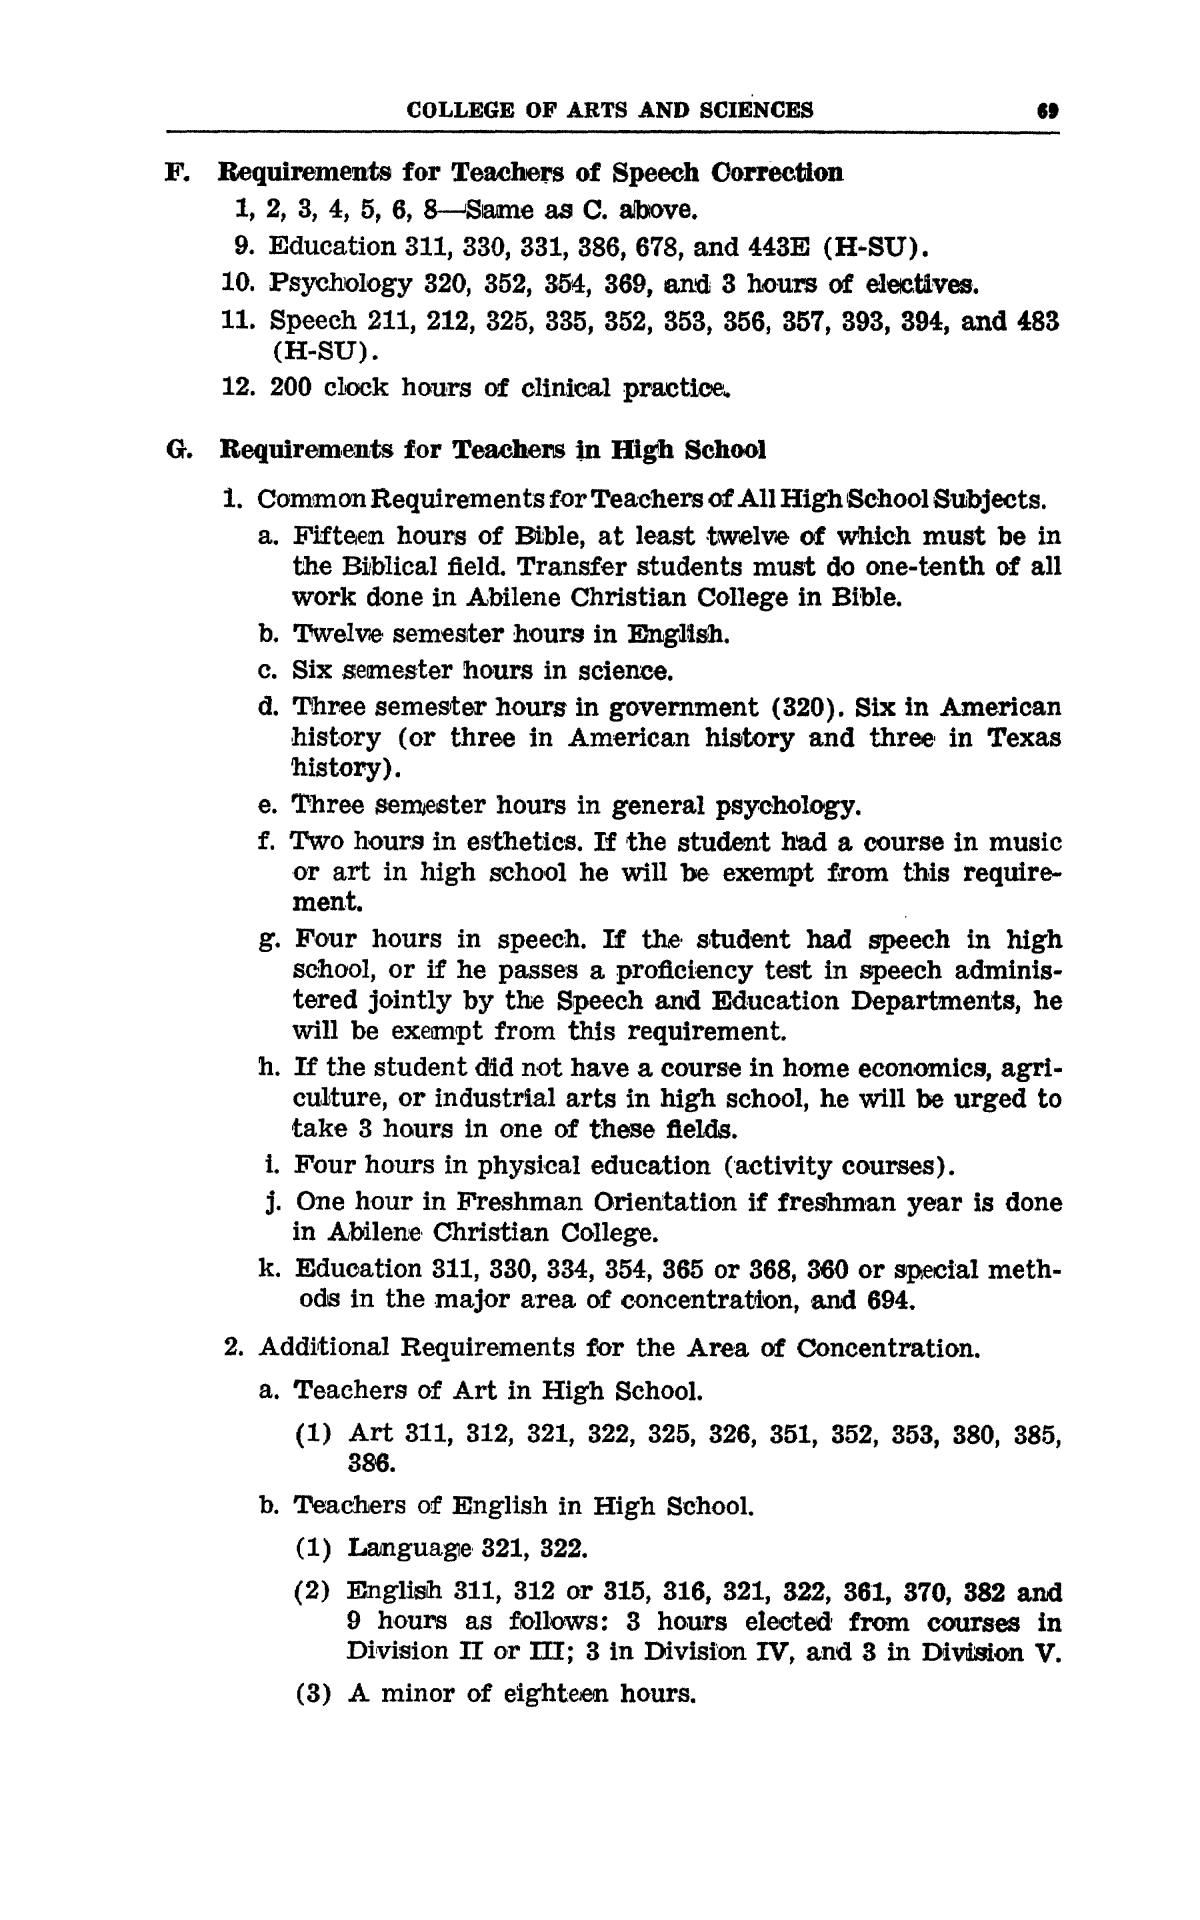 Catalog of Abilene Christian College, 1960-1962
                                                
                                                    69
                                                